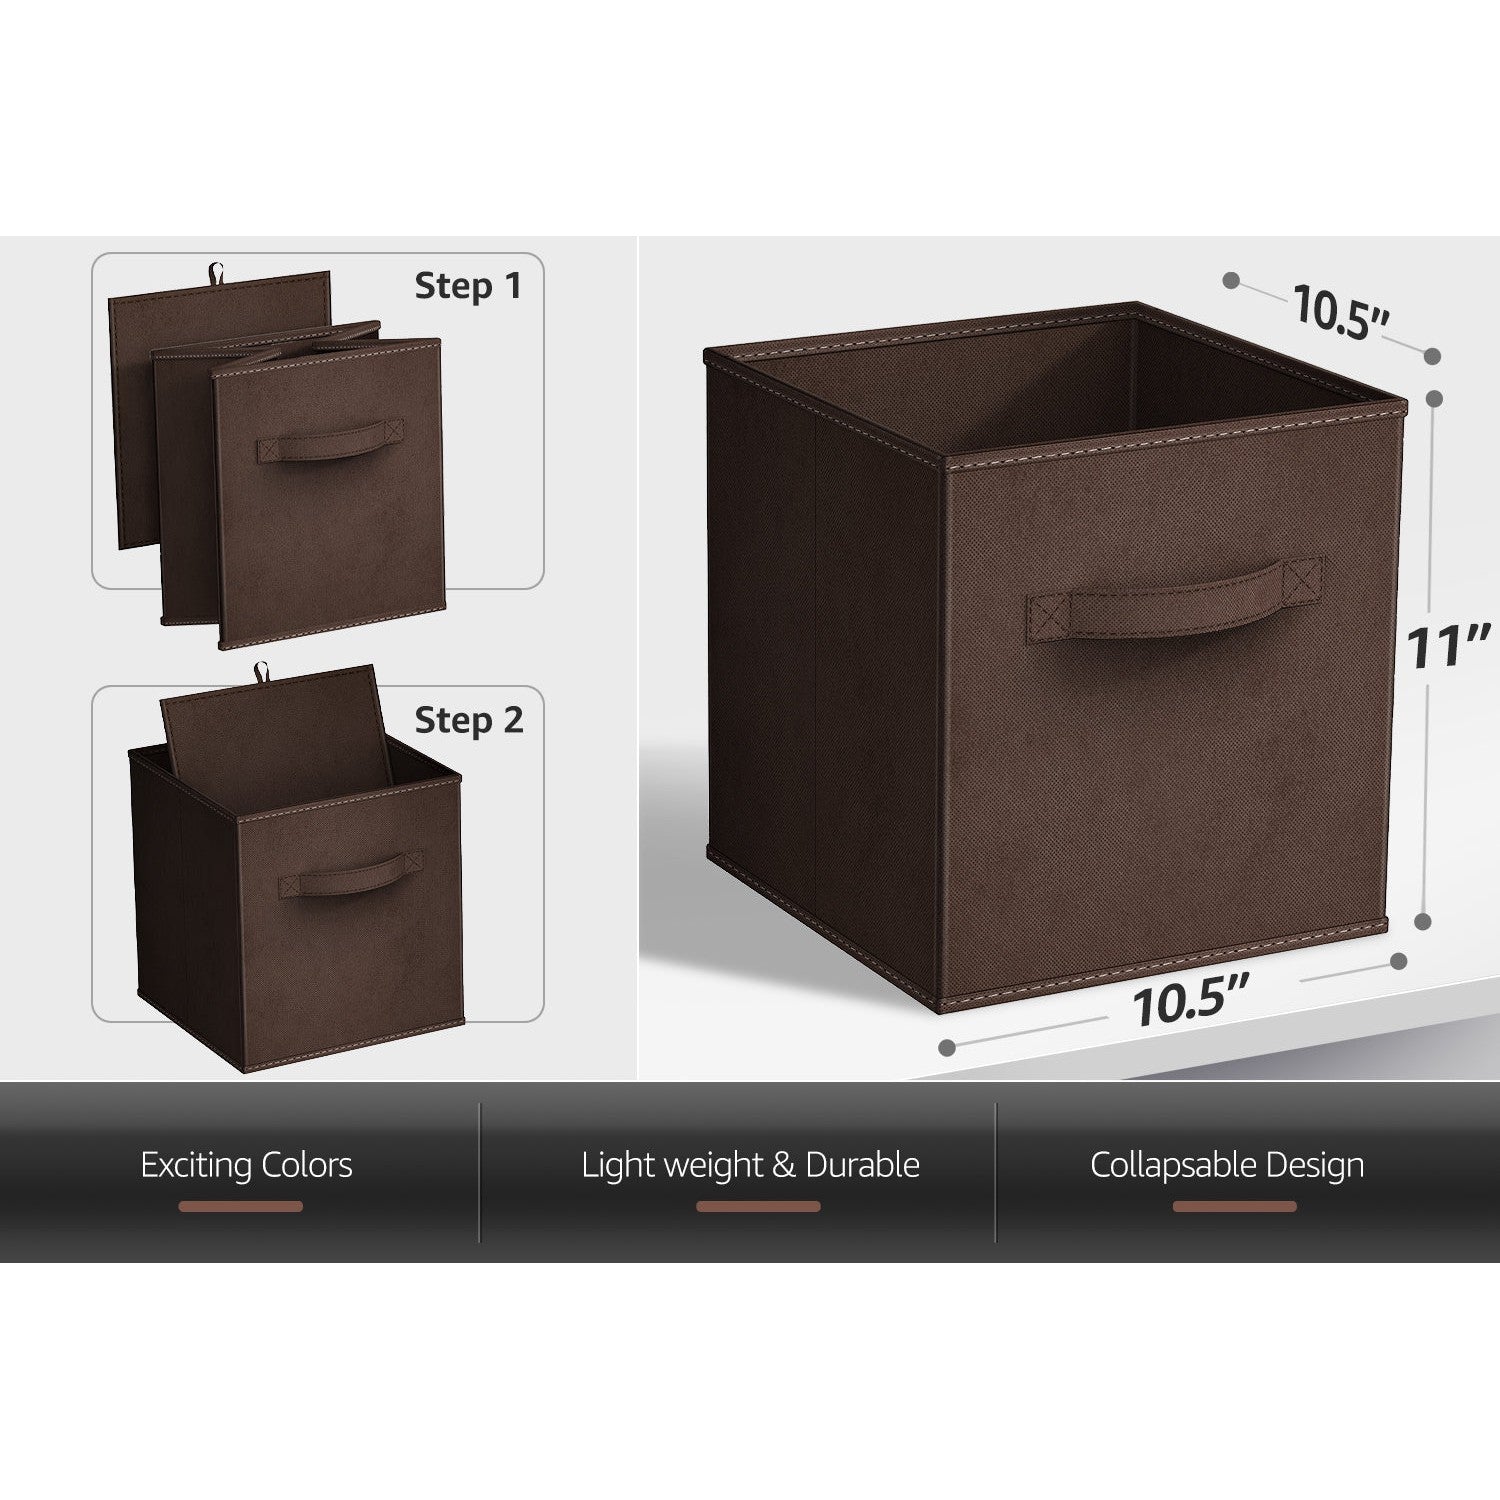 Sorbus Foldable Cube Storage Basket Bins, 6-Pack, Chevron Pattern